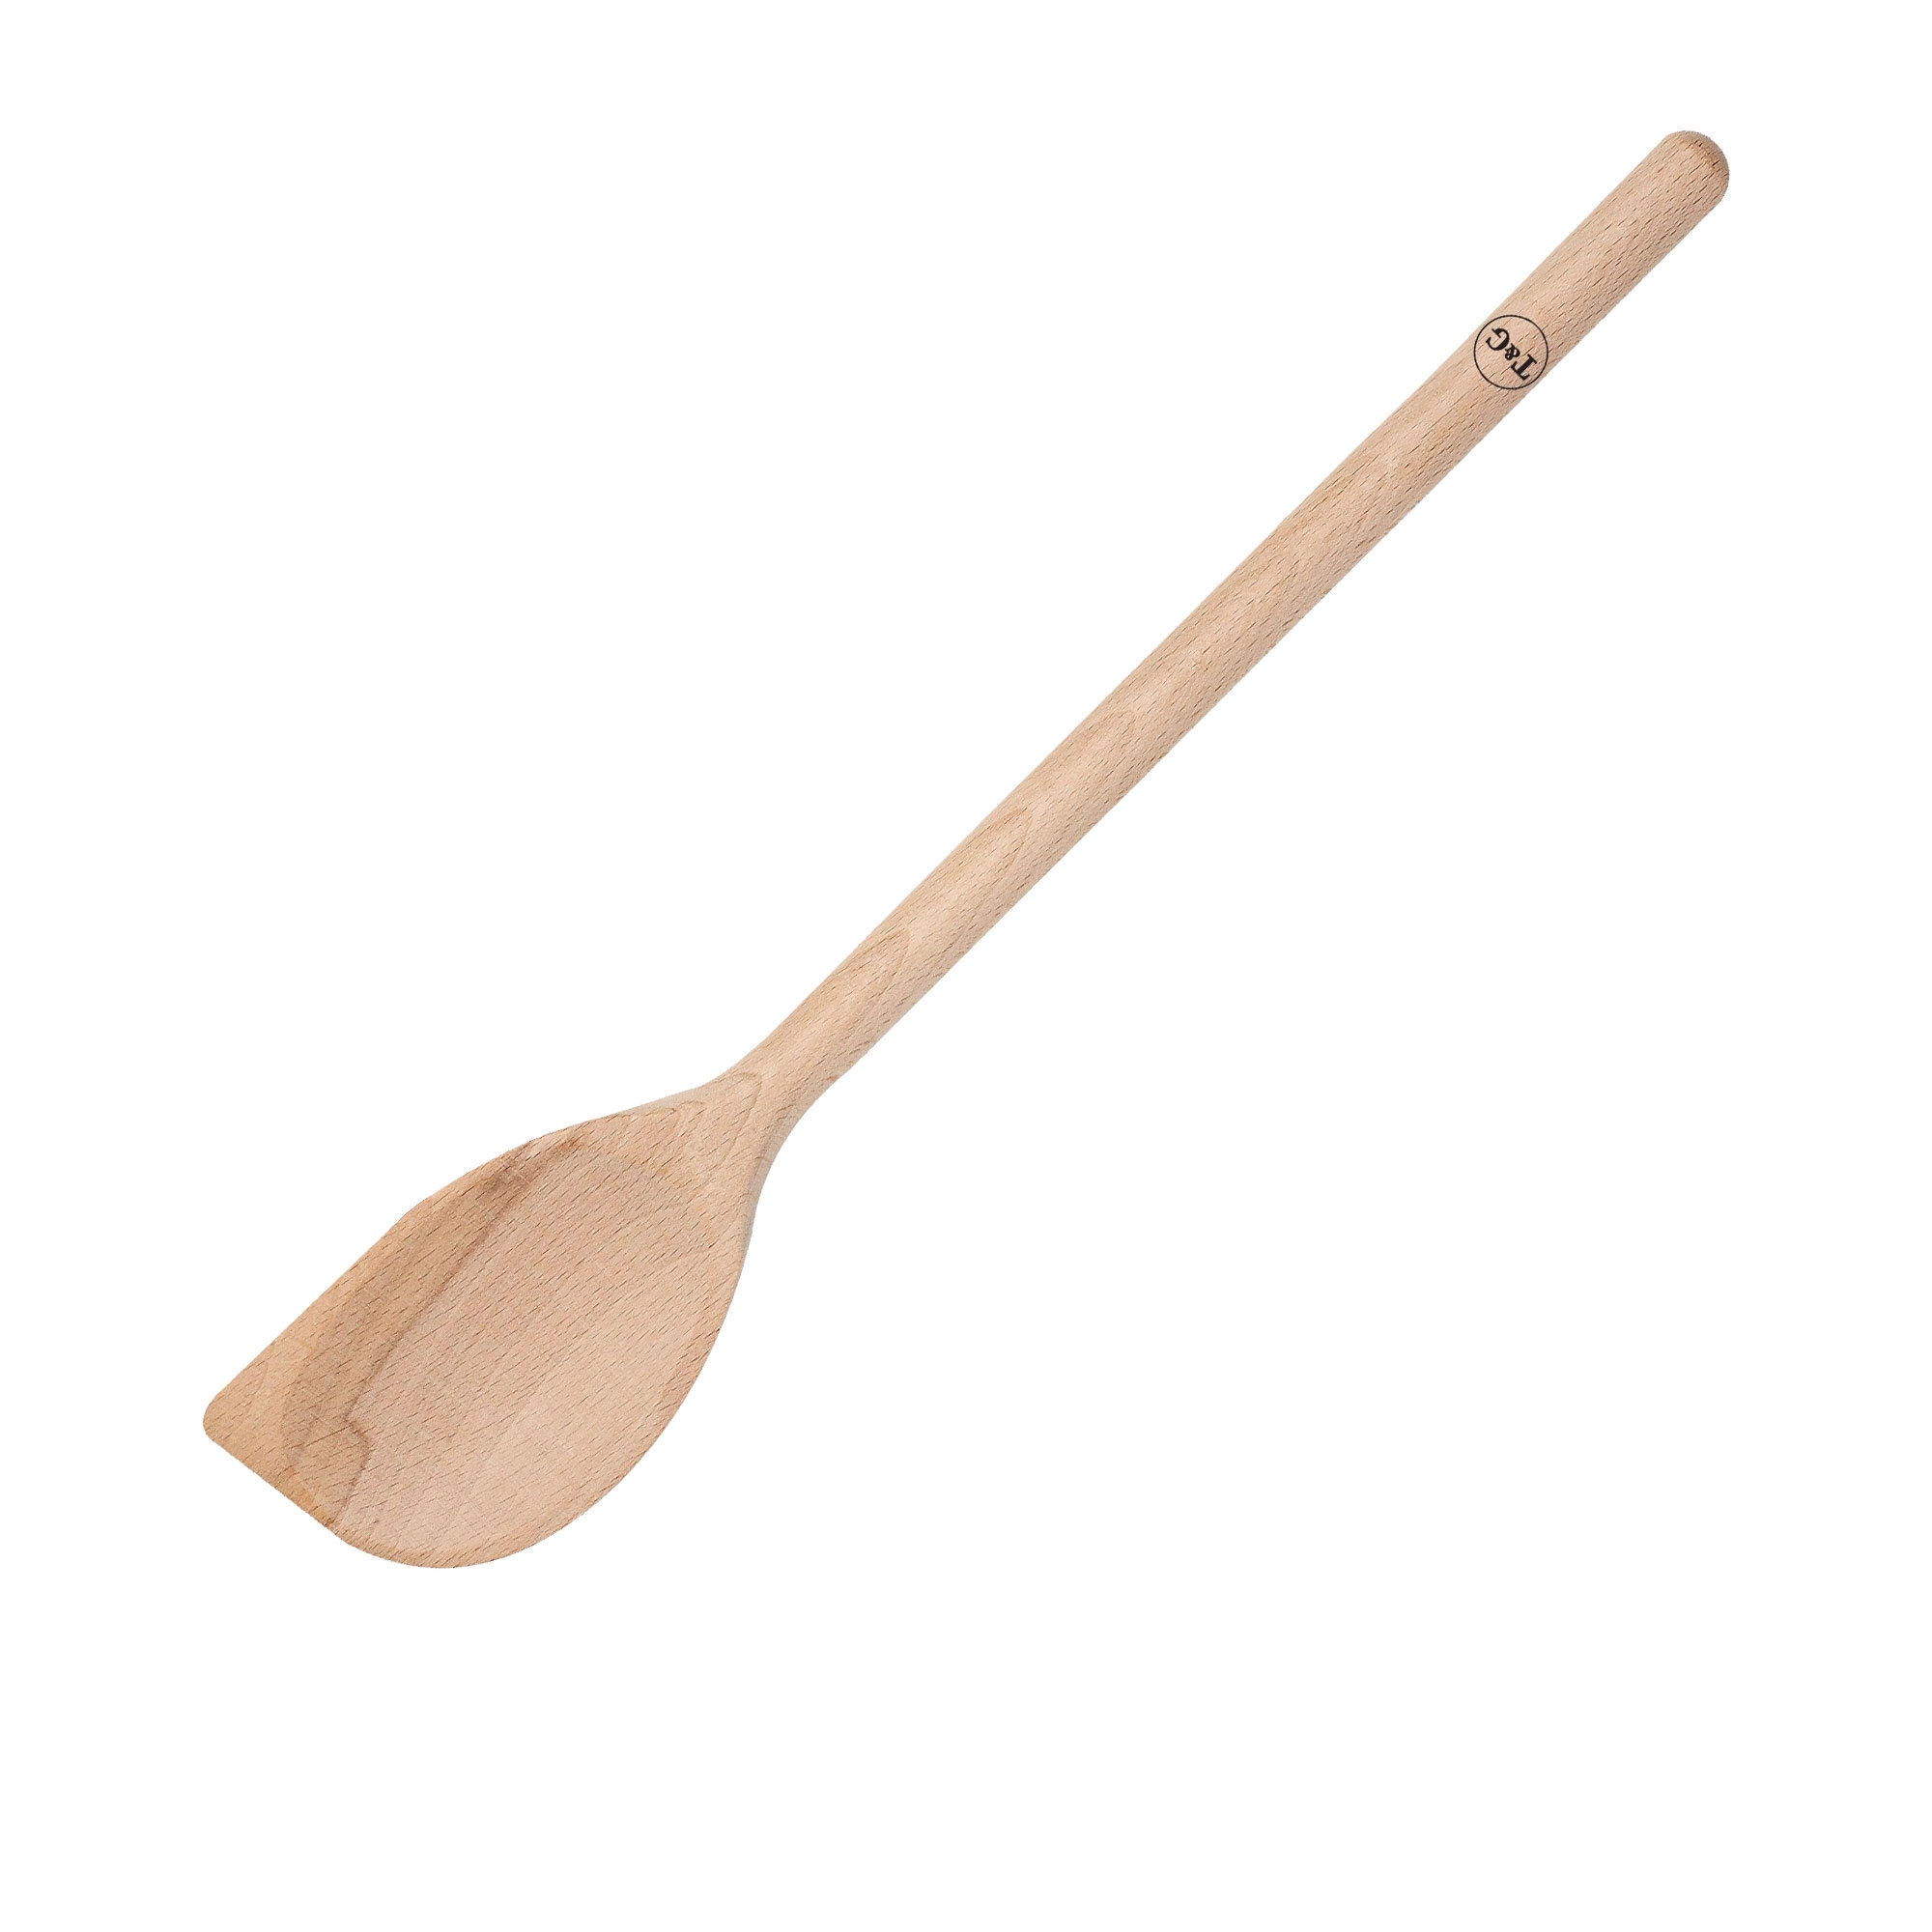 Wild Wood Wooden Scraper Spoon Image 1